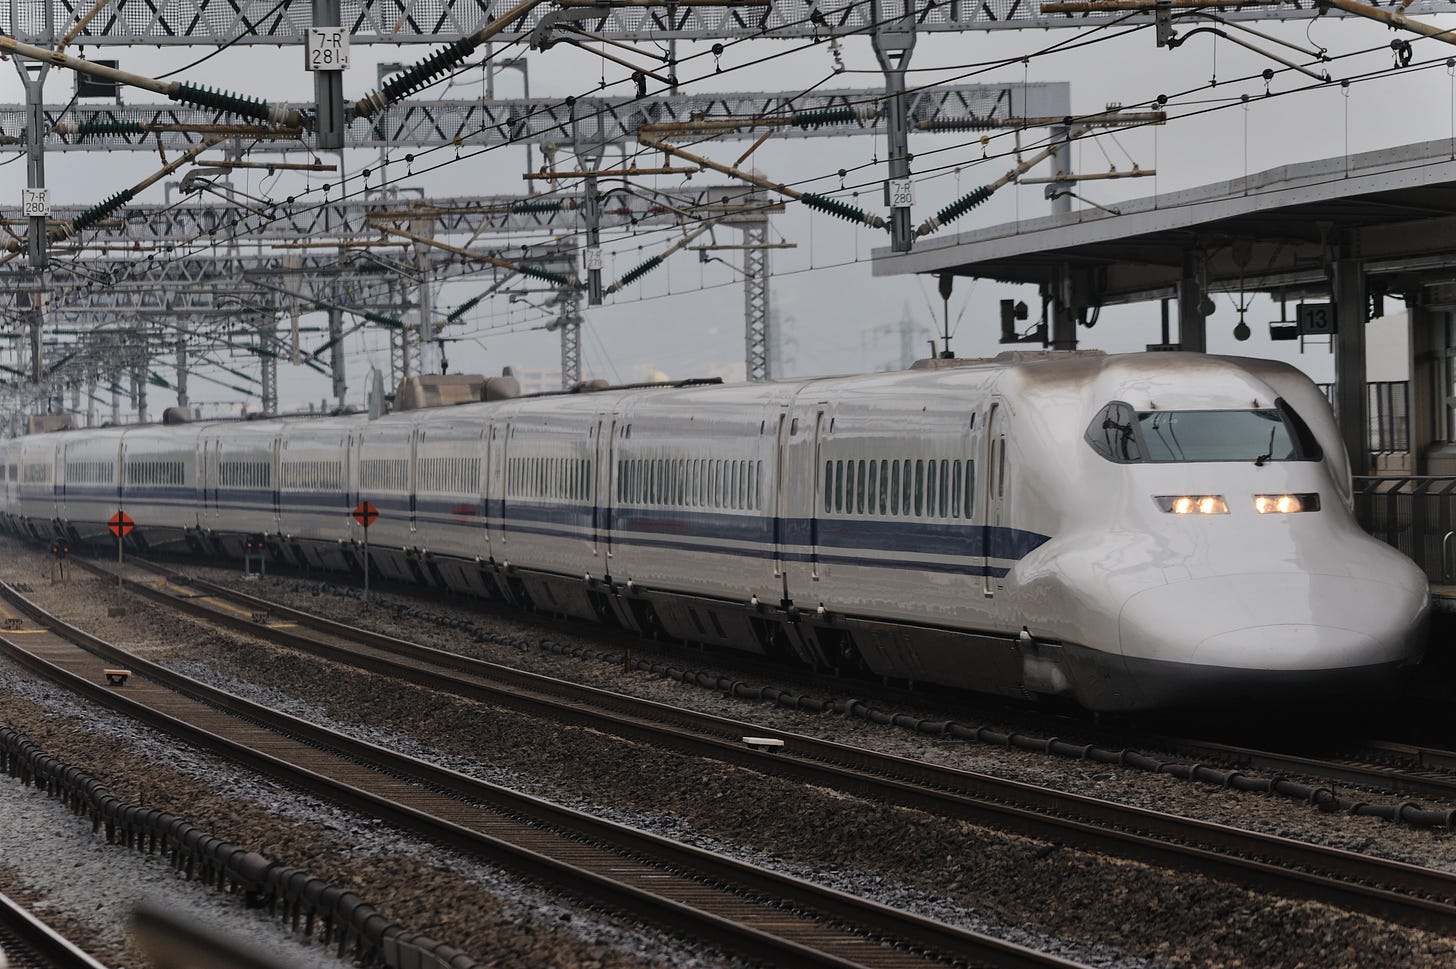 File:Shinkansen 700 series (4111729081).jpg - Wikimedia Commons